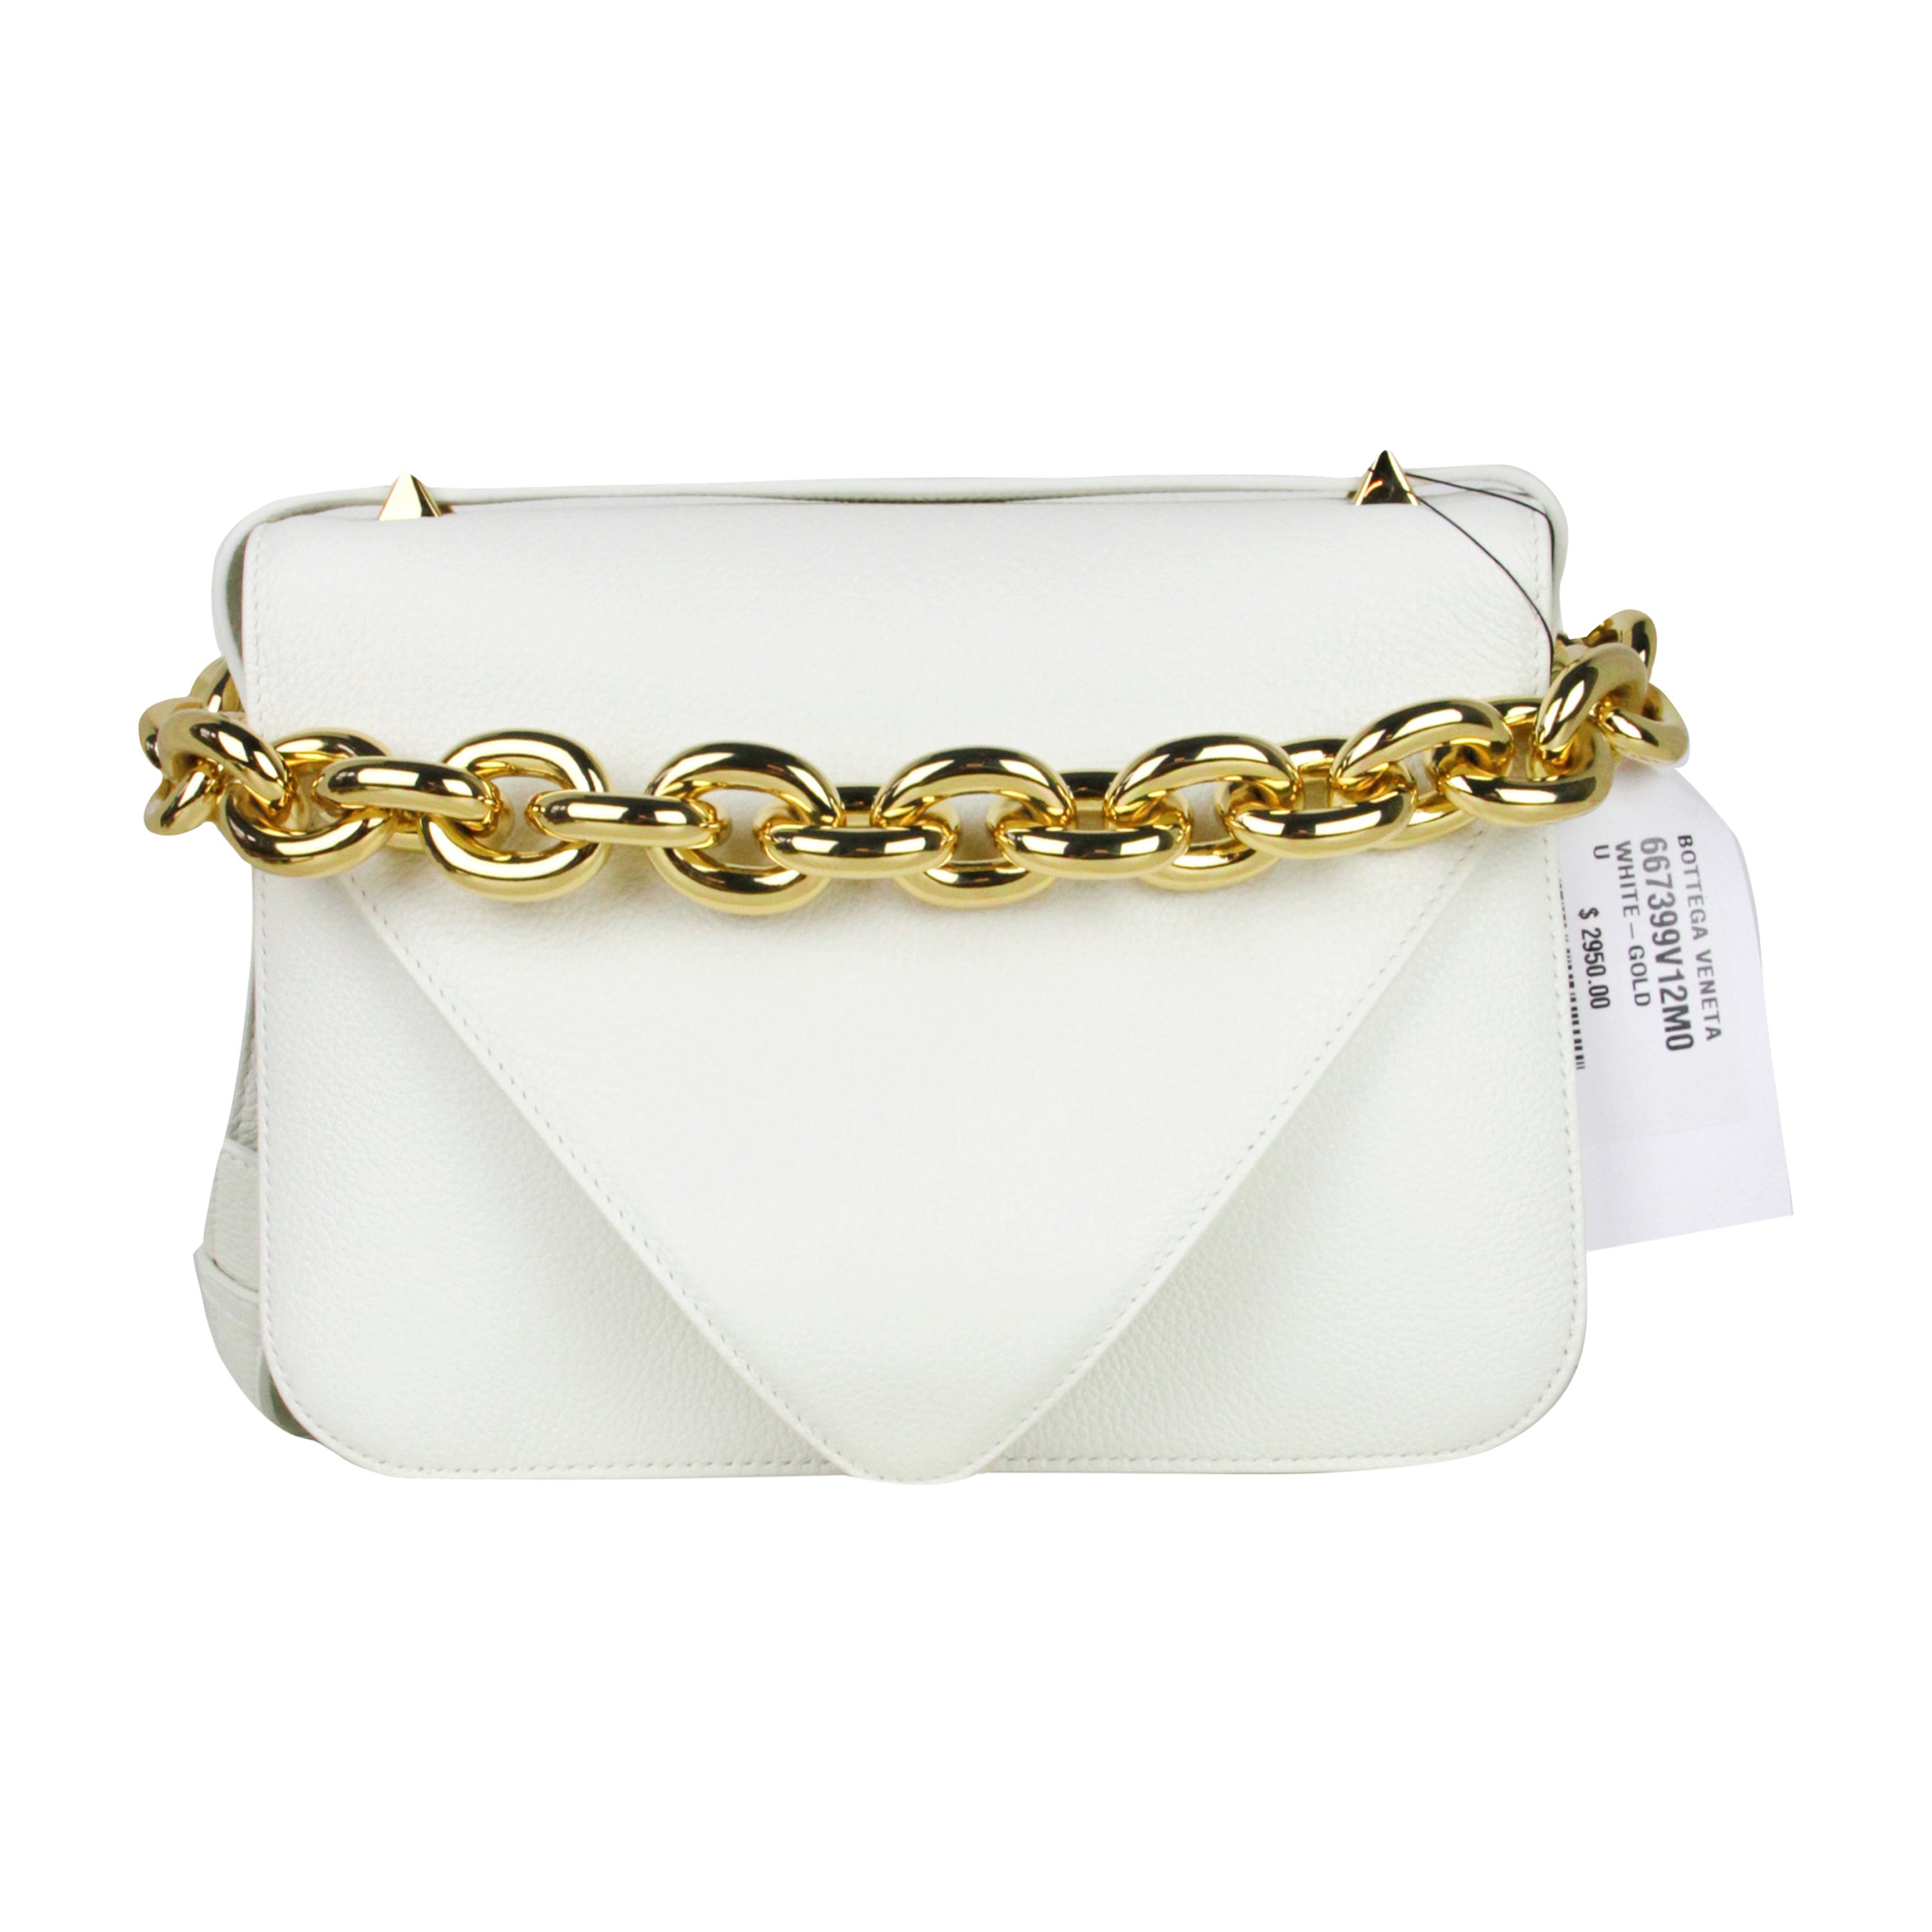 Bottega Veneta White Calfskin Mount Envelope Bag rt. $3, 900